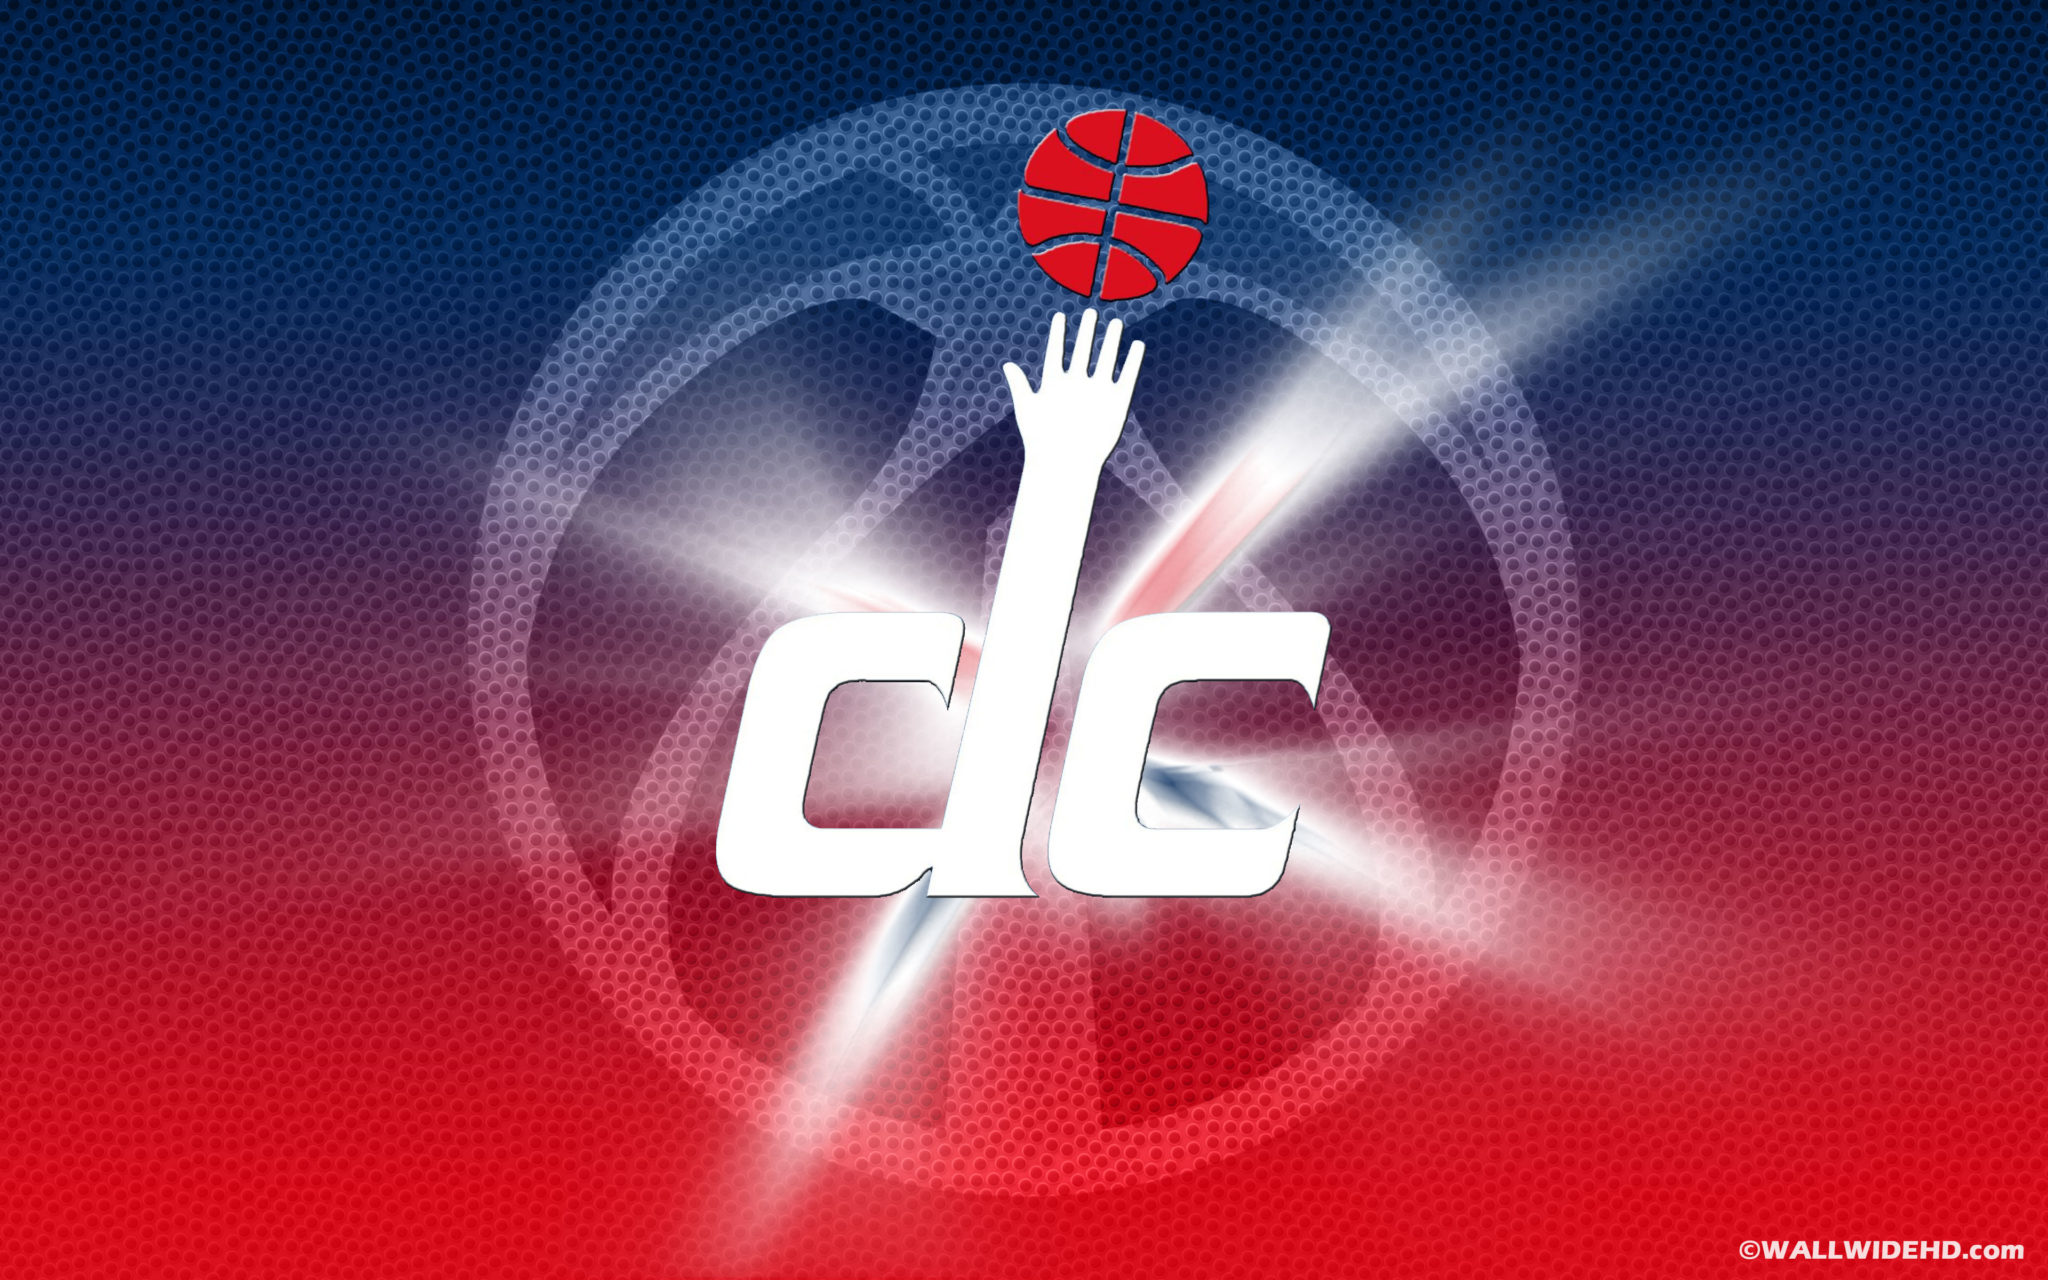 Washington-Wizards-2014-Logo-NBA-Wallpaper - KidsKud